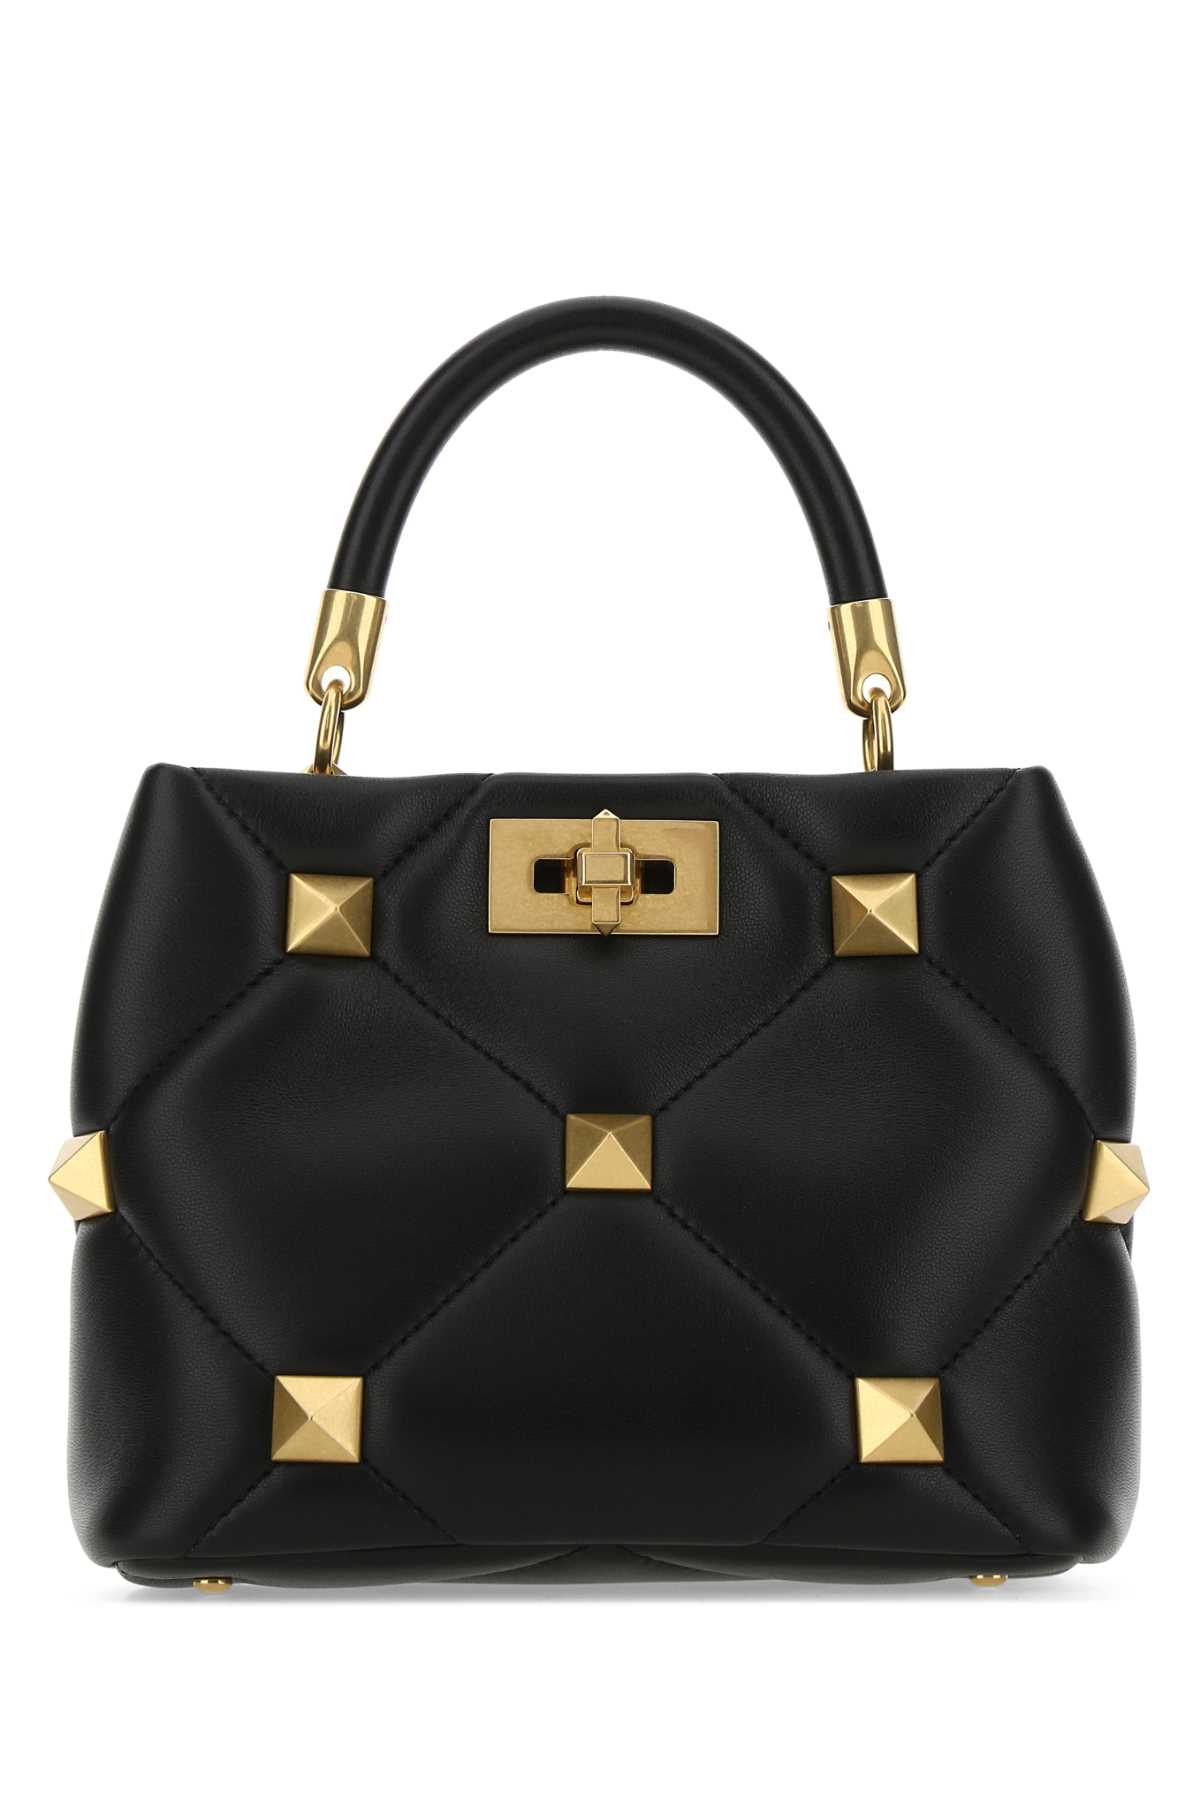 Shop Valentino Black Nappa Leather Small Roman Stud Handbag In Nero